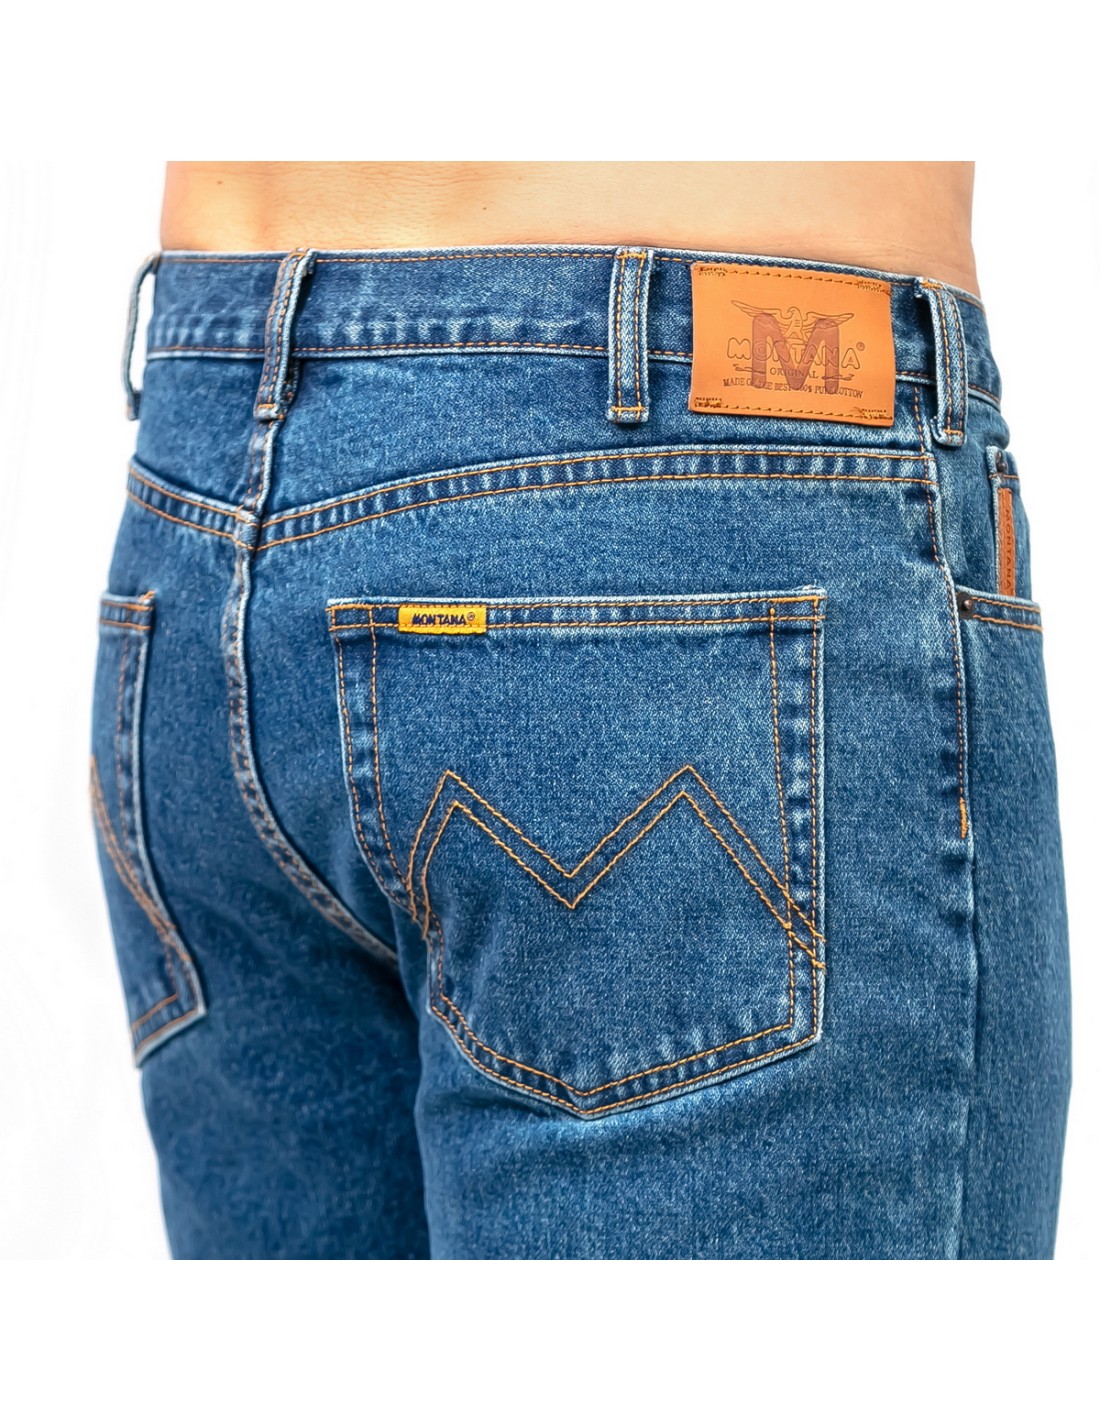 MONTANA - производит легендарные джинсы Монтана для мужчин и женщин